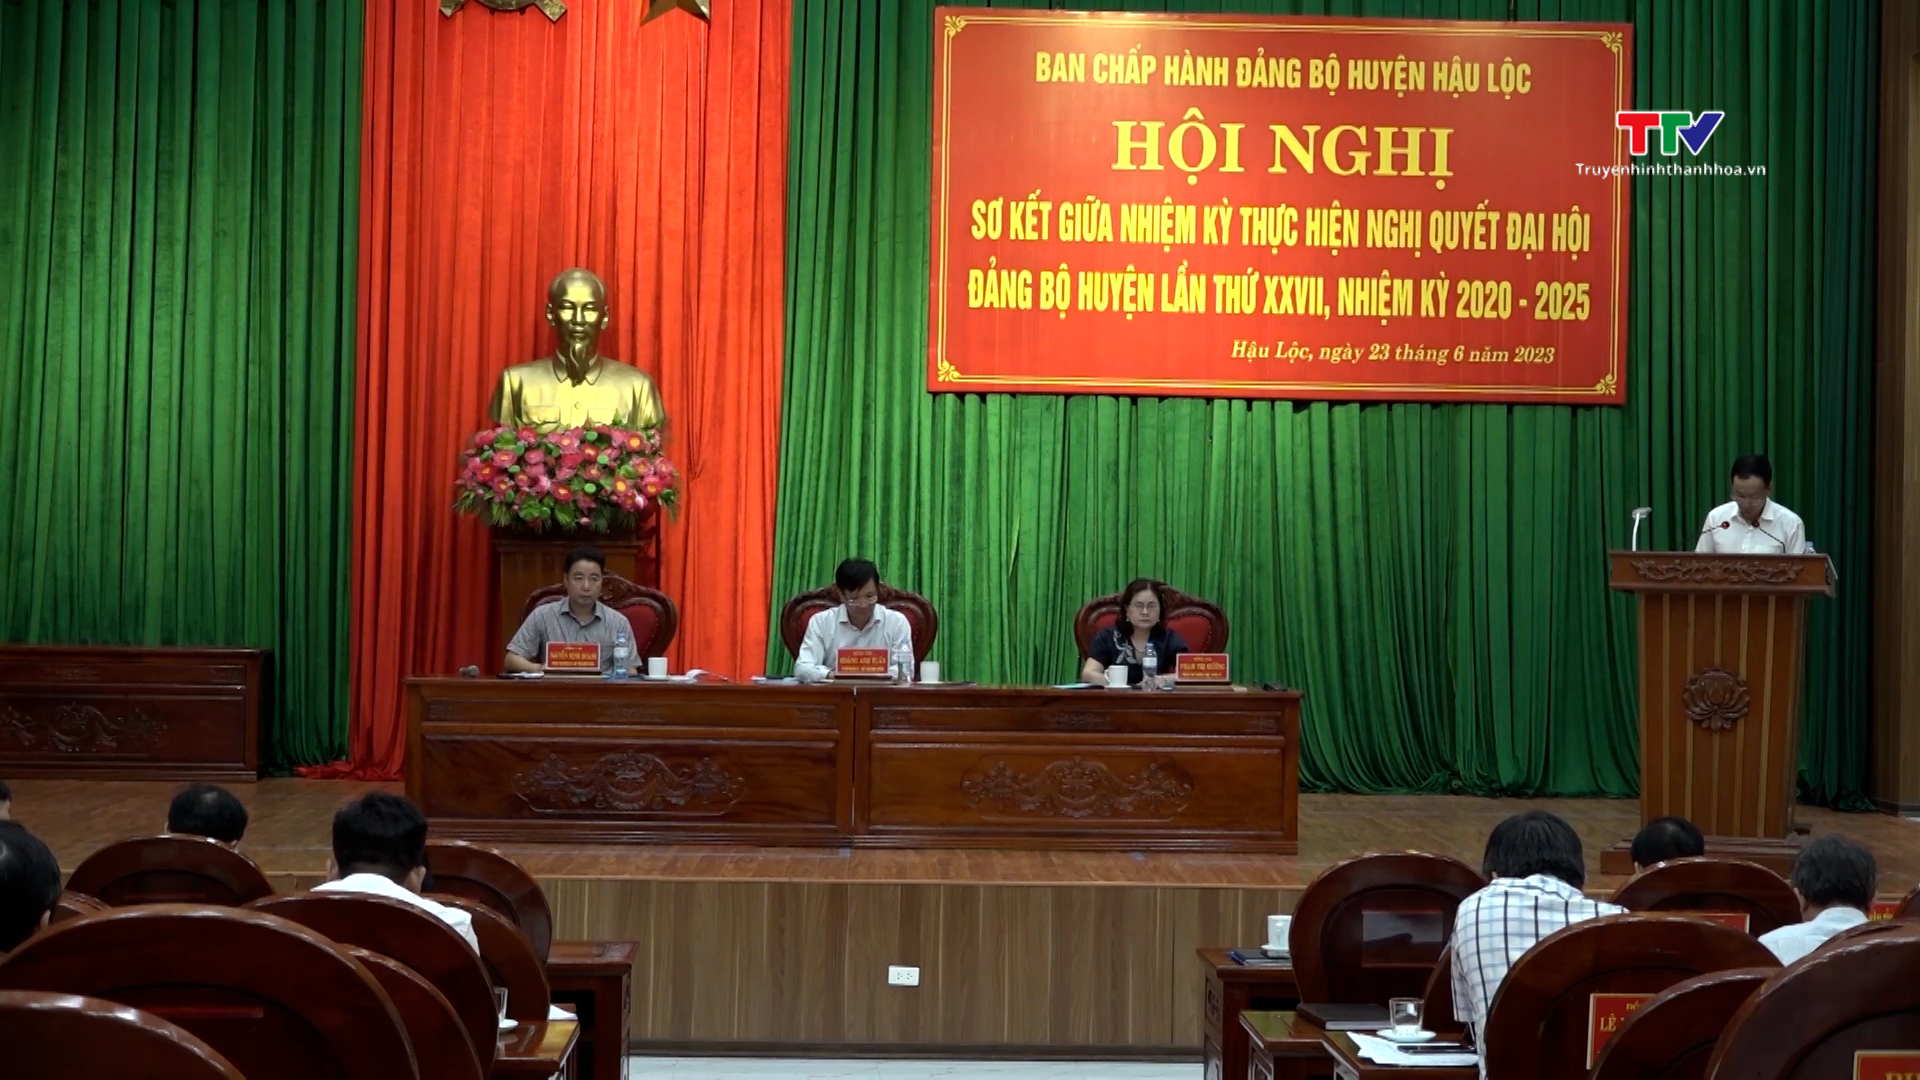 Huyện Hậu Lộc Sơ kết giữa nhiệm kỳ thực hiện Nghị quyết Đại hội Đảng bộ huyện lần thứ XXVII - Ảnh 2.